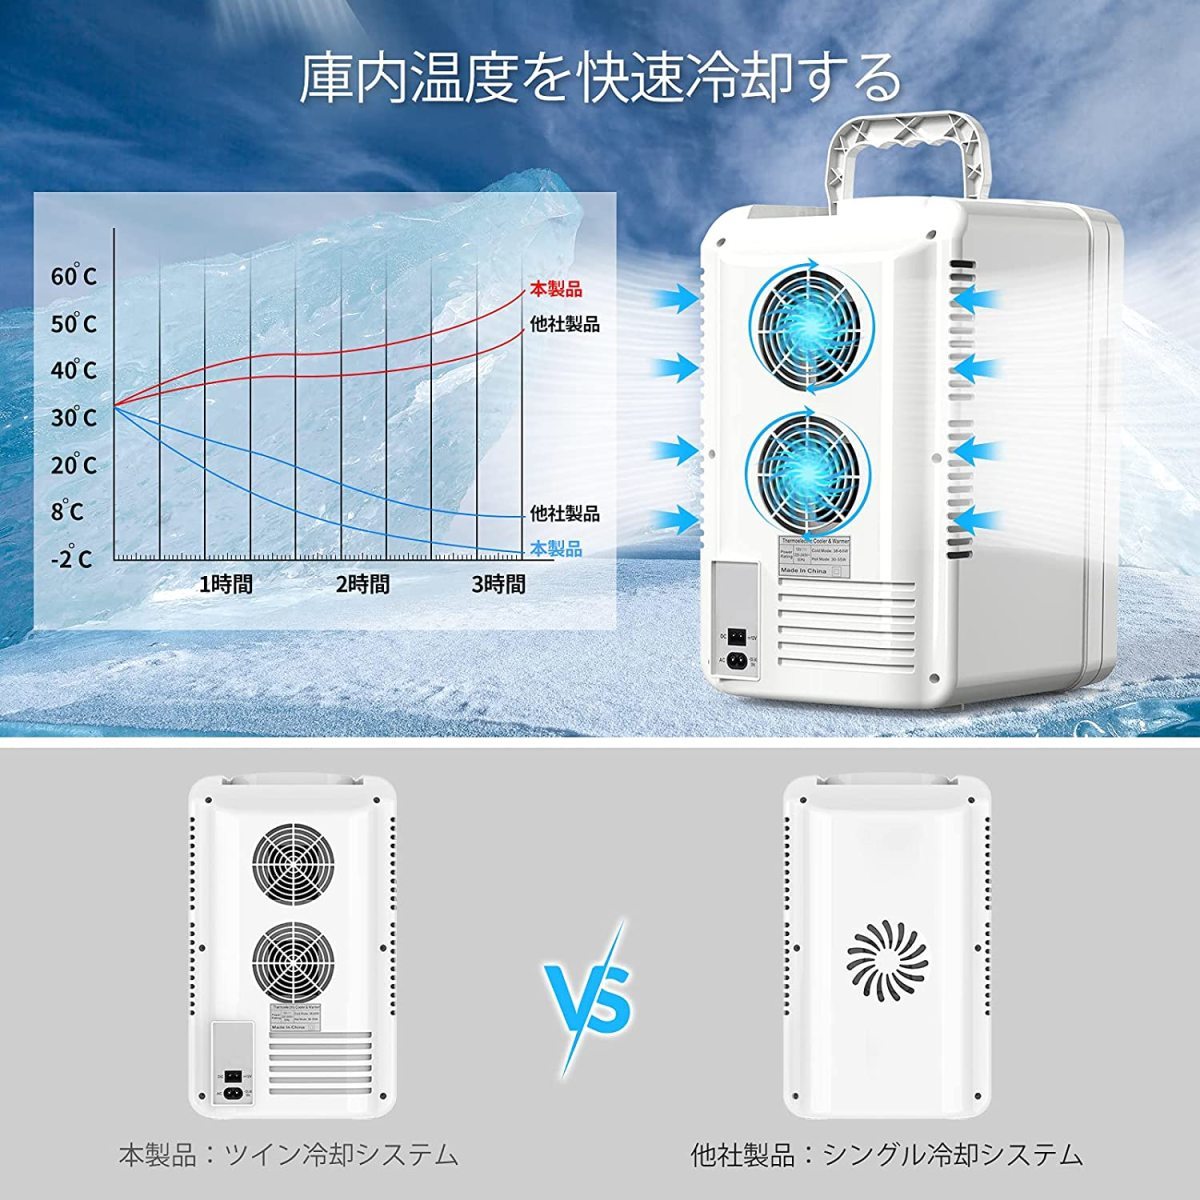 ■新品■ROCKPALS ミニ冷蔵庫 冷温庫 10L (-9~60°C)小型でポータブル AC/DC給電 (車載/家庭用) 低騒音 静音 軽量 省エネ_画像4